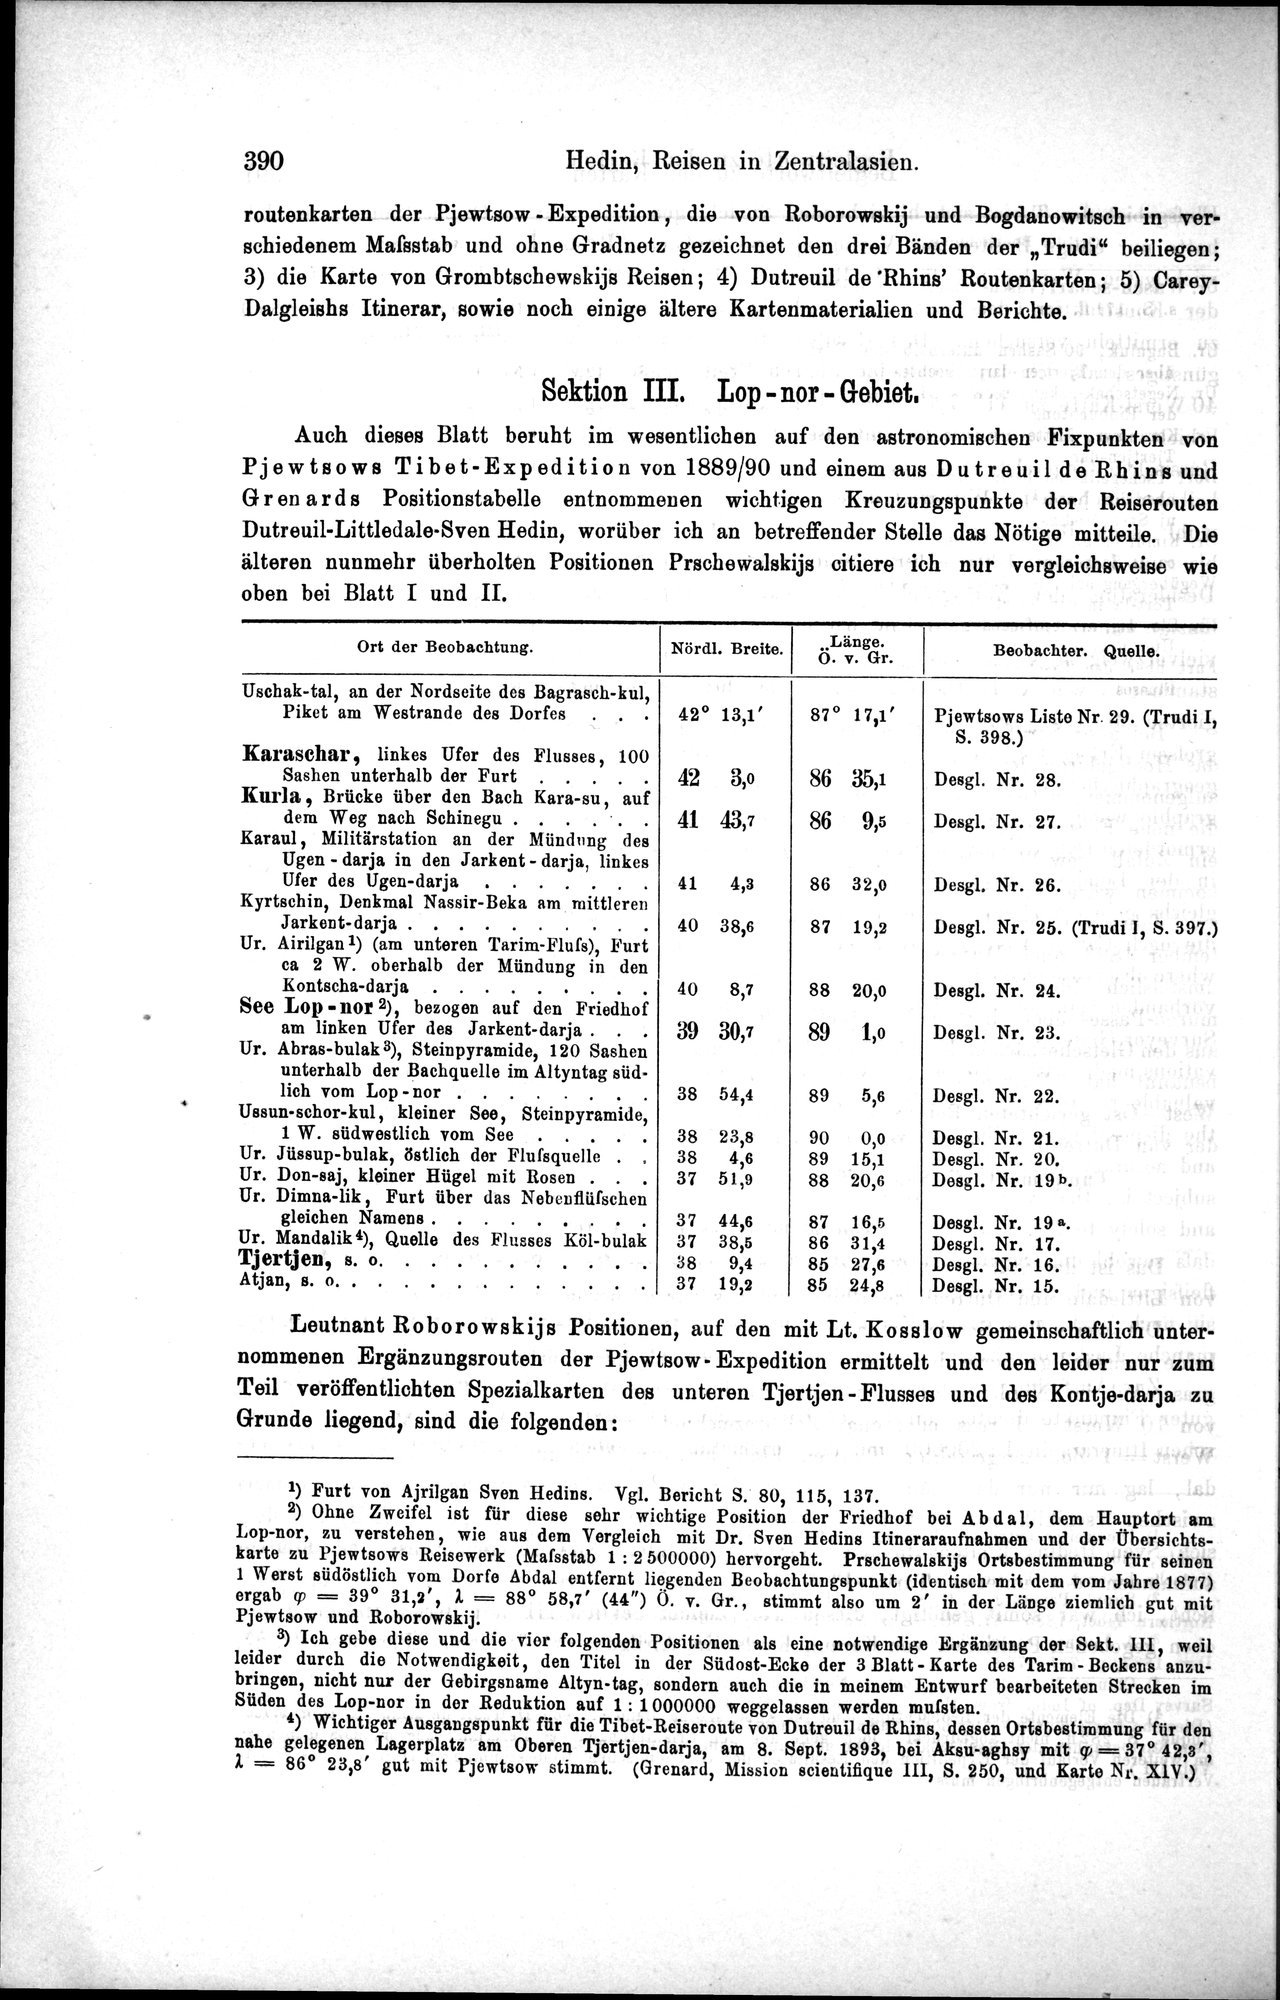 Die Geographische-Wissenschaftlichen Ergebnisse meiner Reisen in Zentralasien, 1894-1897 : vol.1 / Page 402 (Grayscale High Resolution Image)